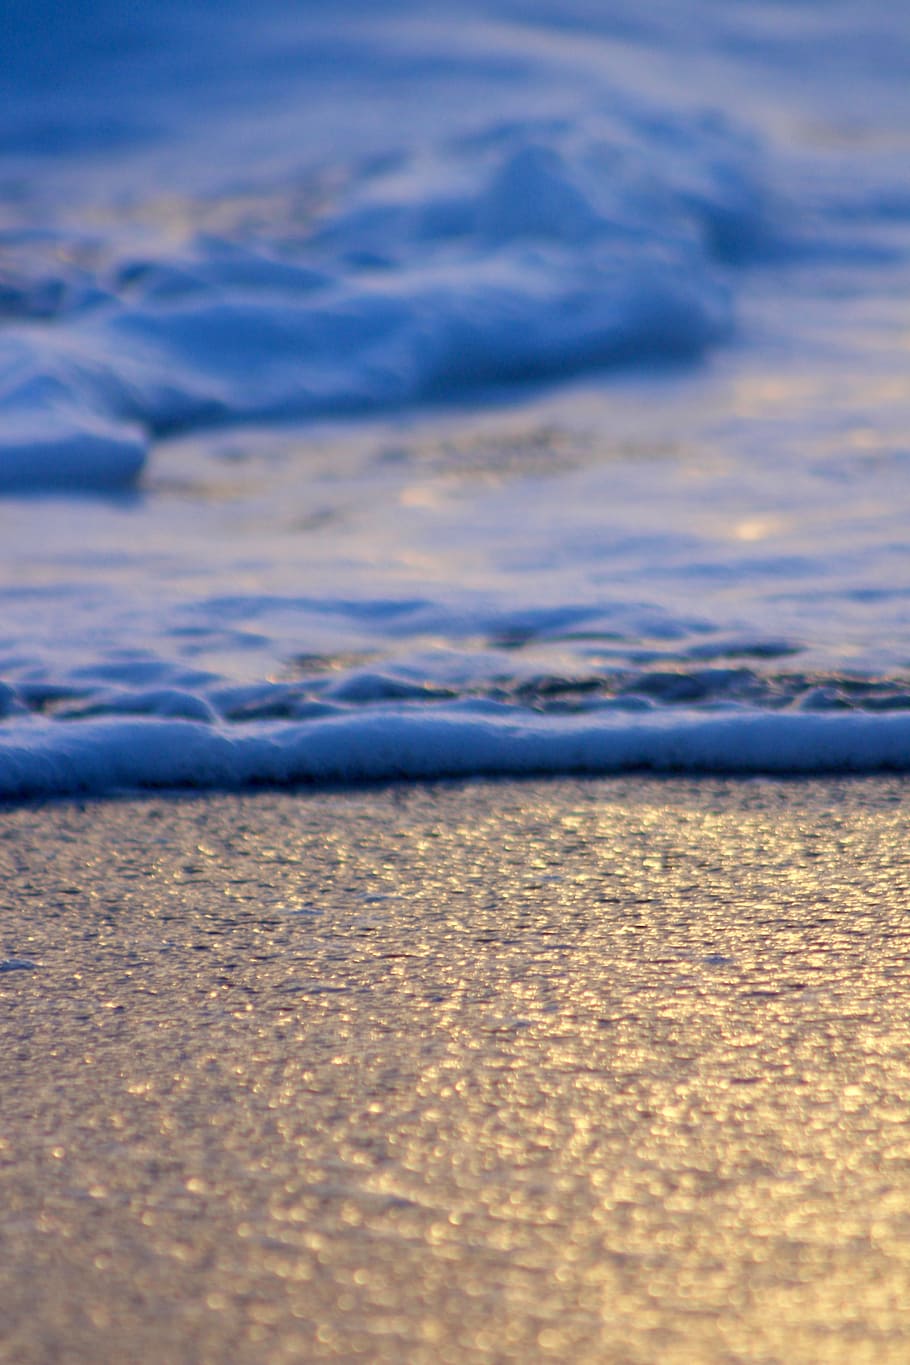 polvo azul, playa, sol, puesta de sol, luz, naranja, arena, mar, océano, olas